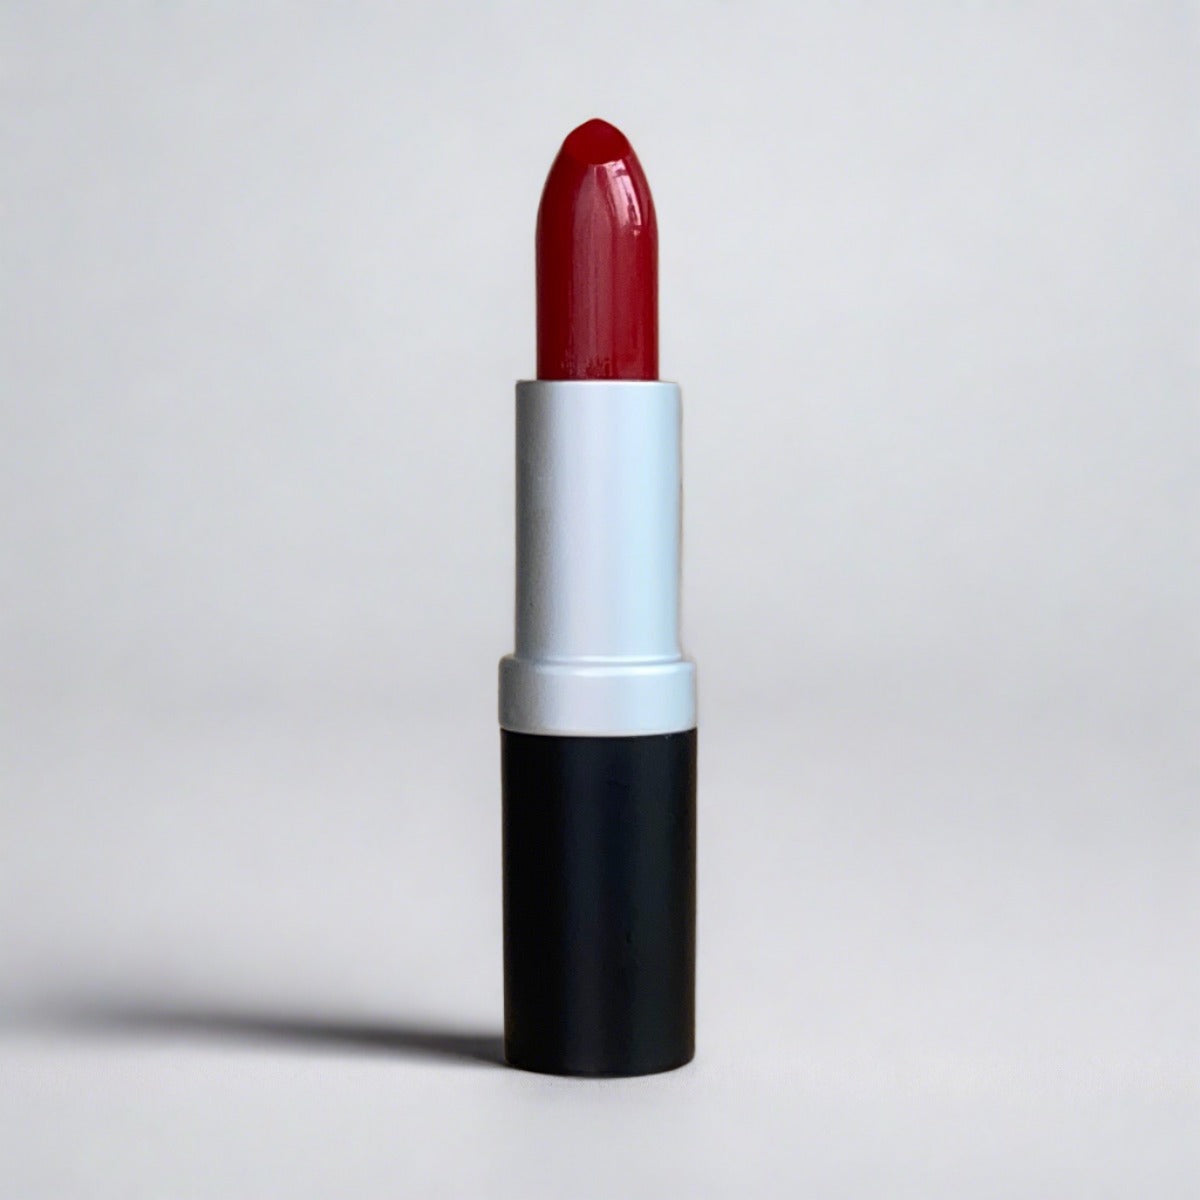 Raisin color lipstick on granite background